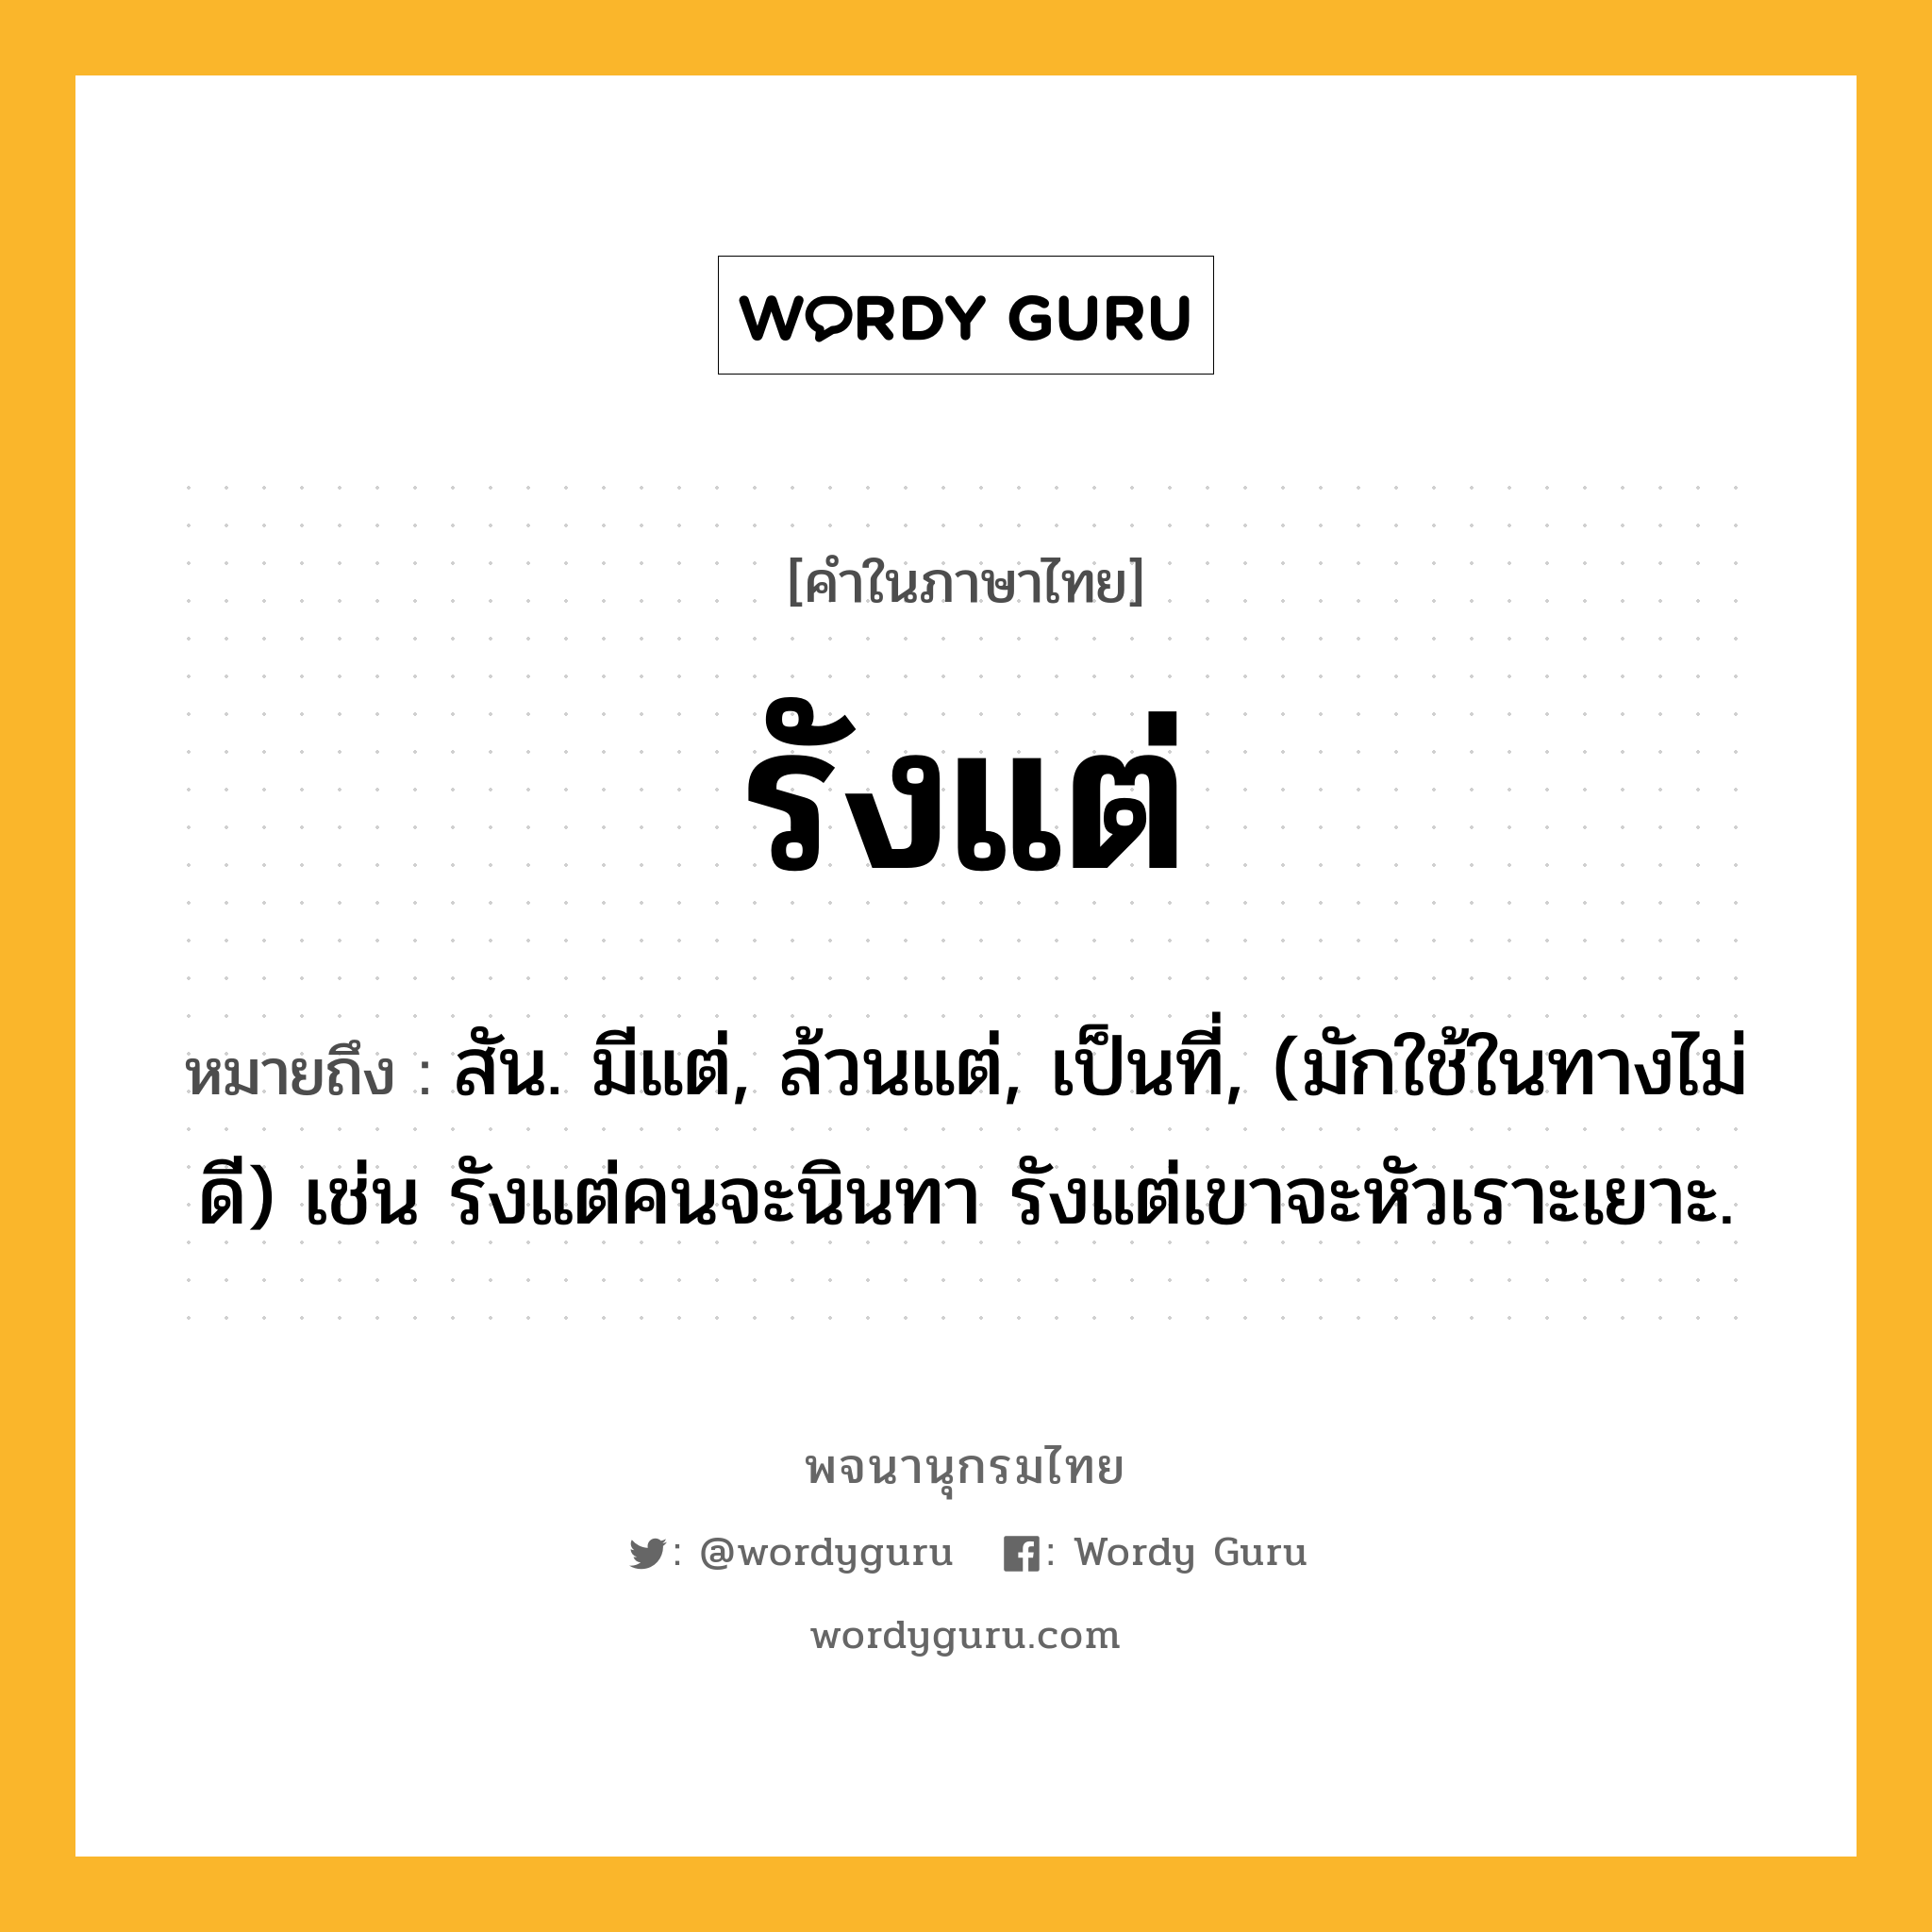 รังแต่ หมายถึงอะไร?, คำในภาษาไทย รังแต่ หมายถึง สัน. มีแต่, ล้วนแต่, เป็นที่, (มักใช้ในทางไม่ดี) เช่น รังแต่คนจะนินทา รังแต่เขาจะหัวเราะเยาะ.